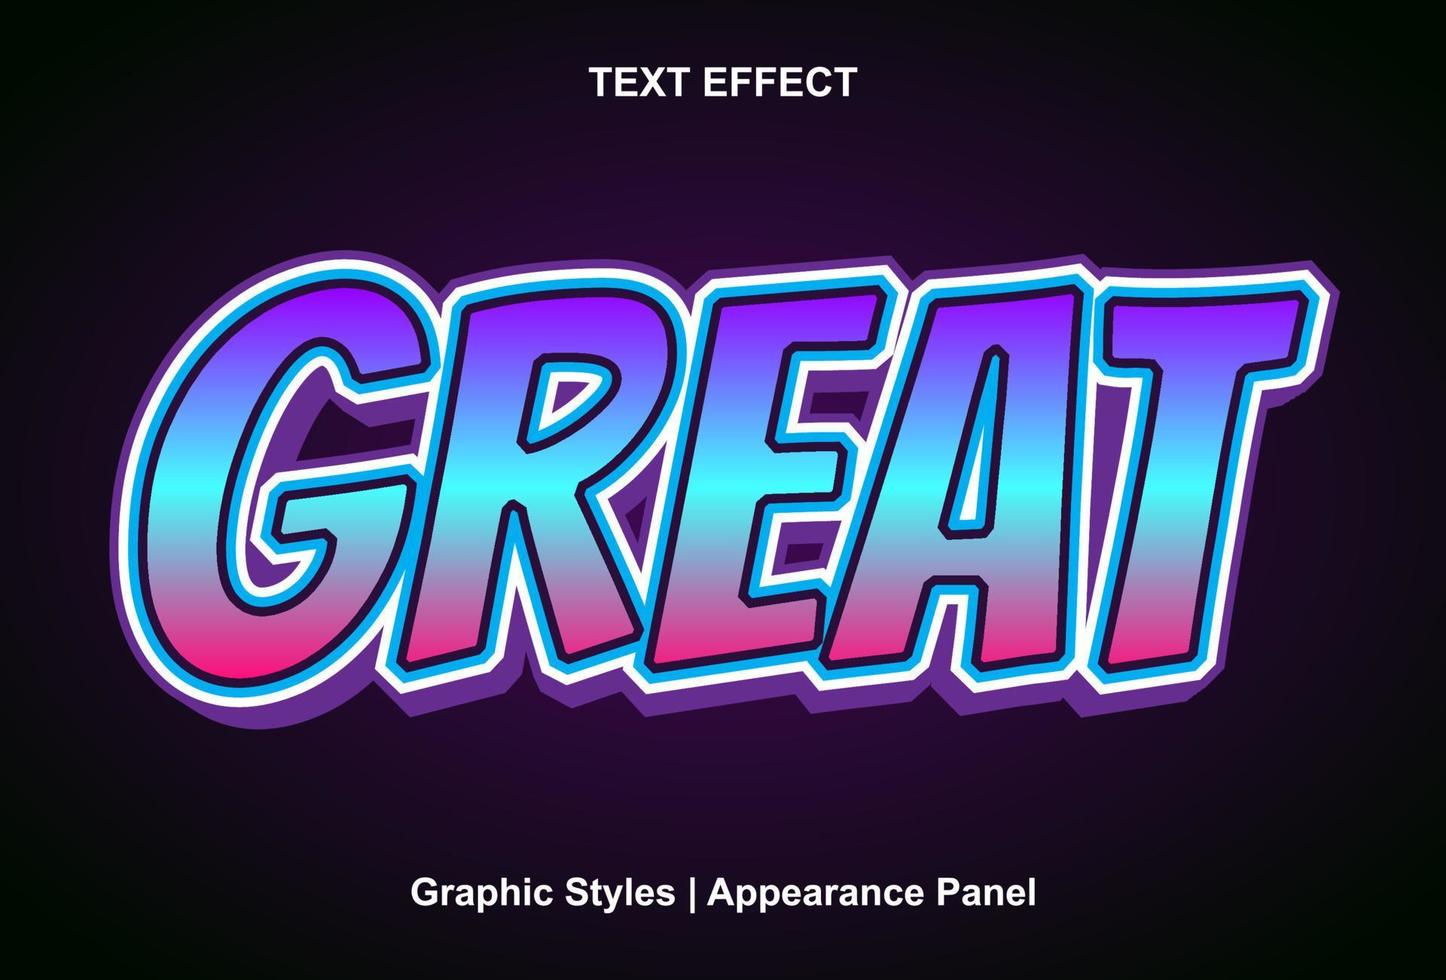 Grandes efectos de texto con estilos gráficos y se pueden editar. vector